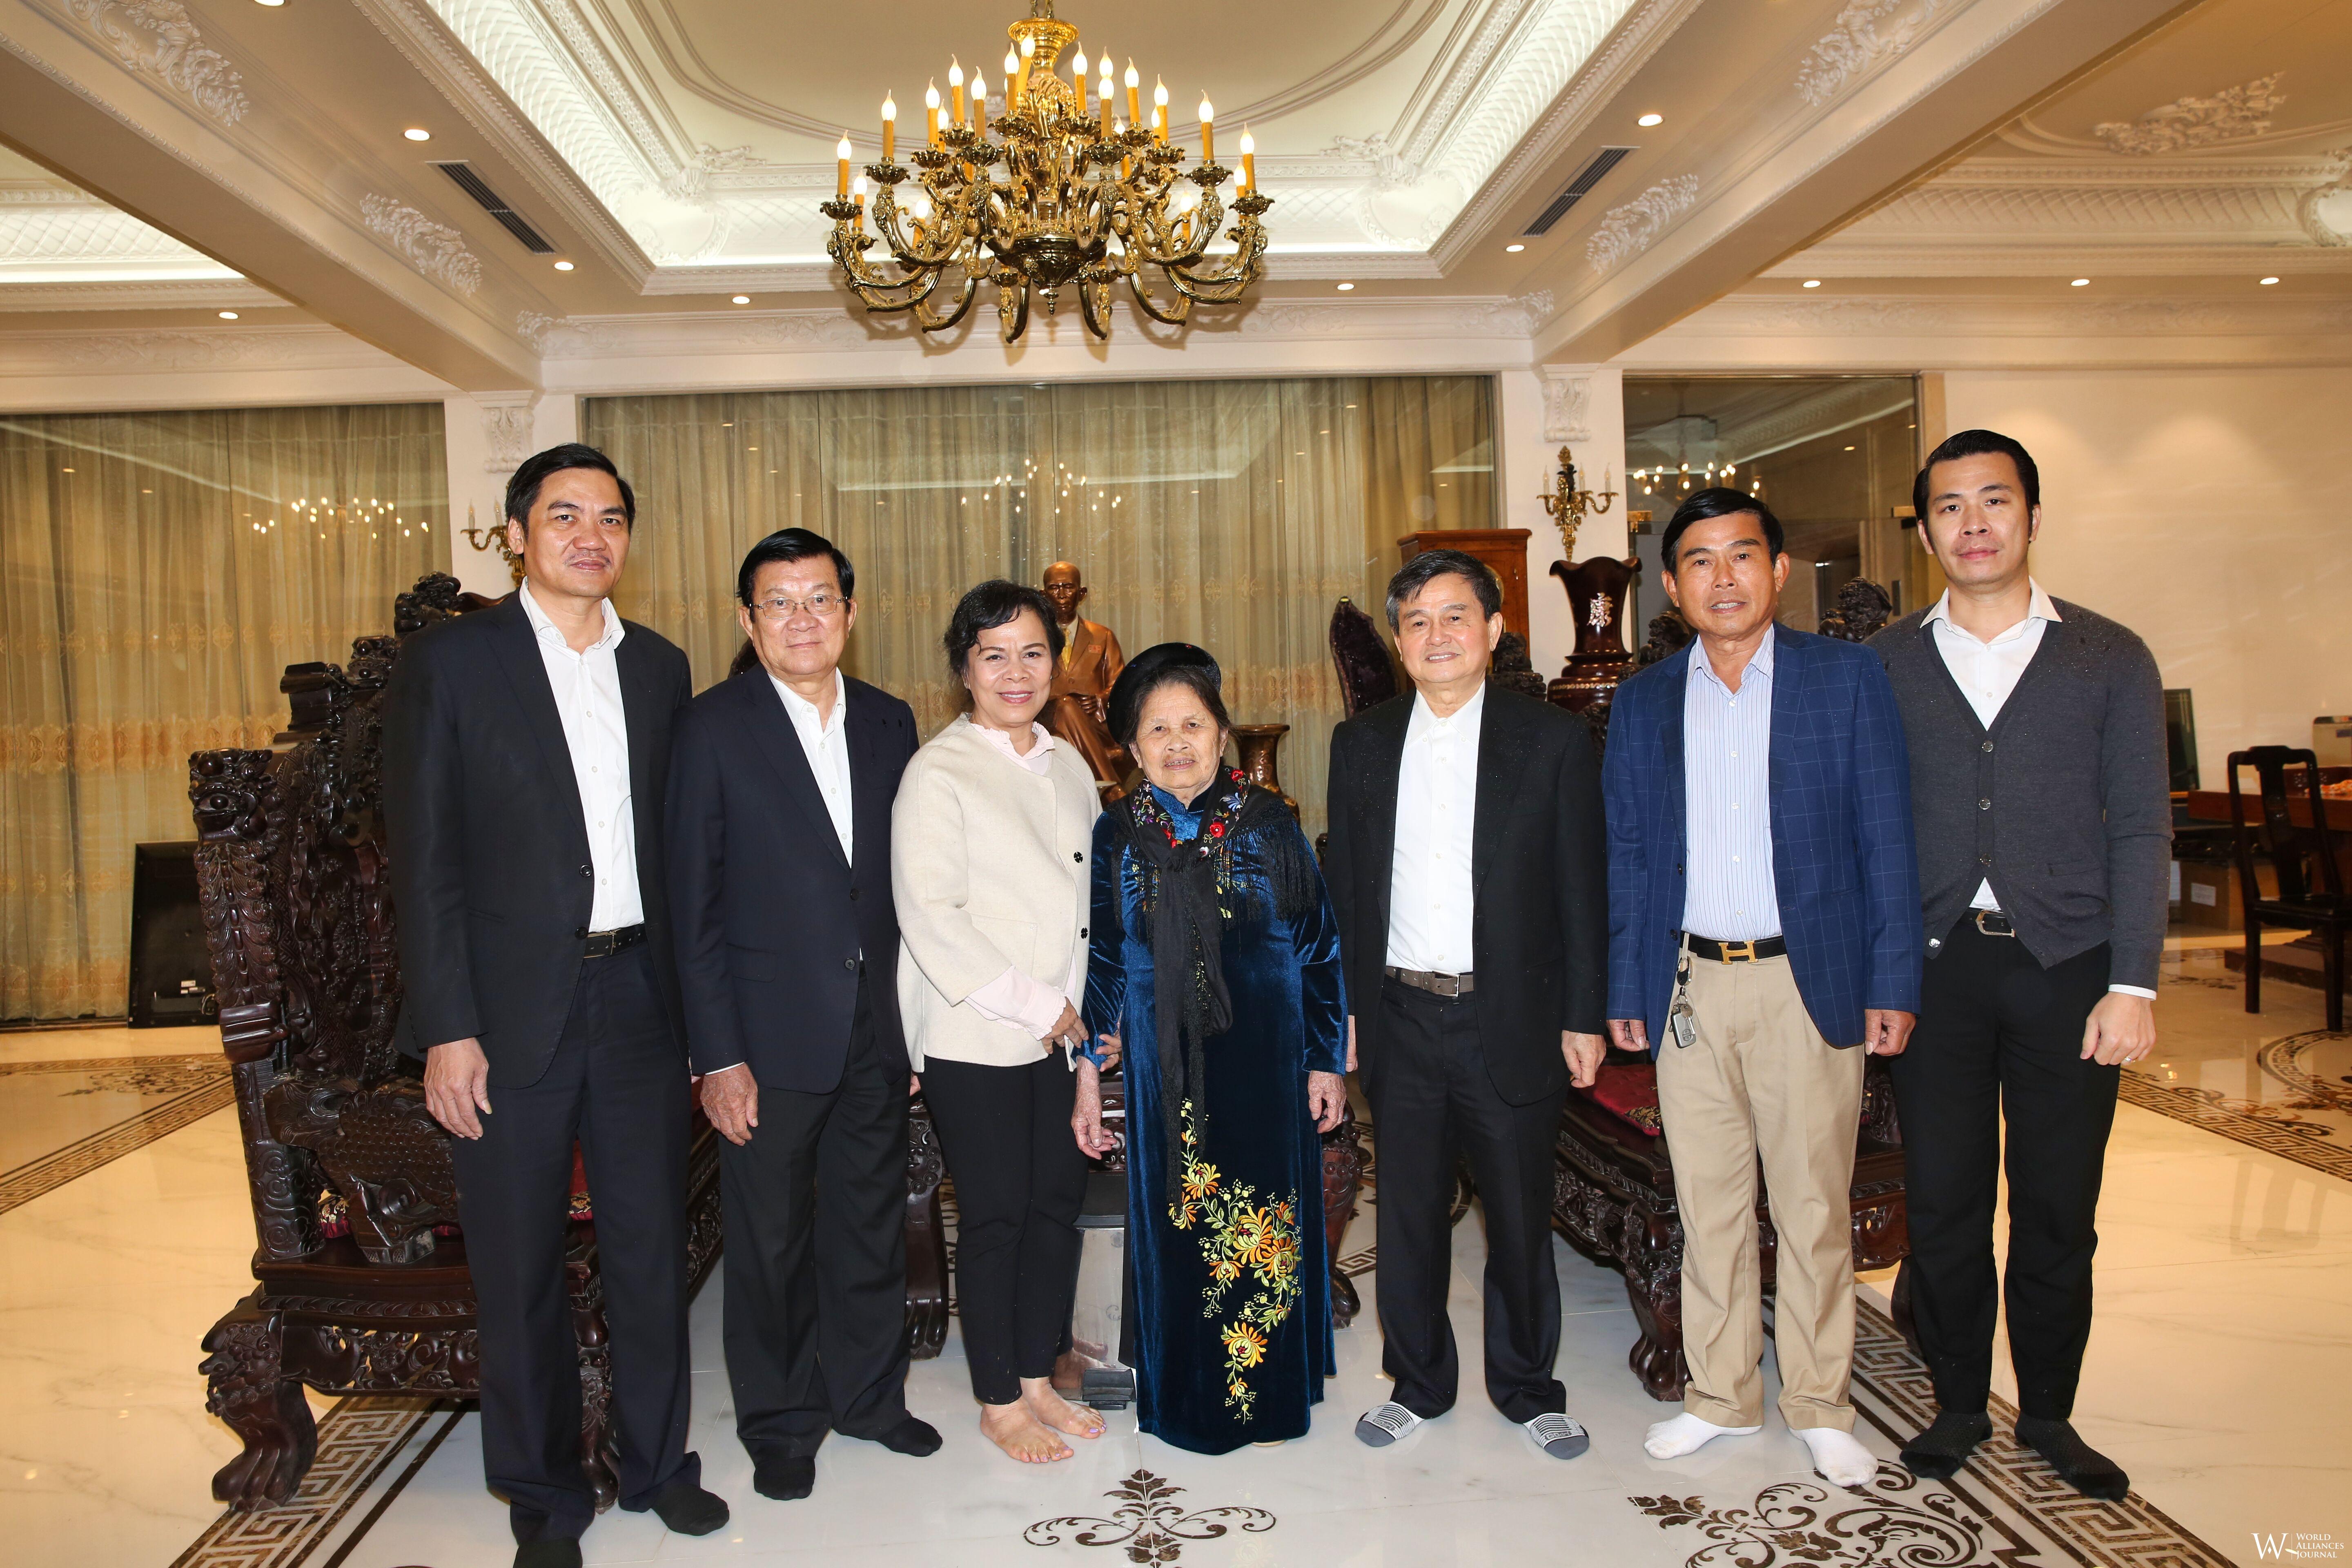 6.CTNTrương Tấn Sang&phu nhân thăm mẹ AHLD Nguyen Dang Giap(1.2019).JPG